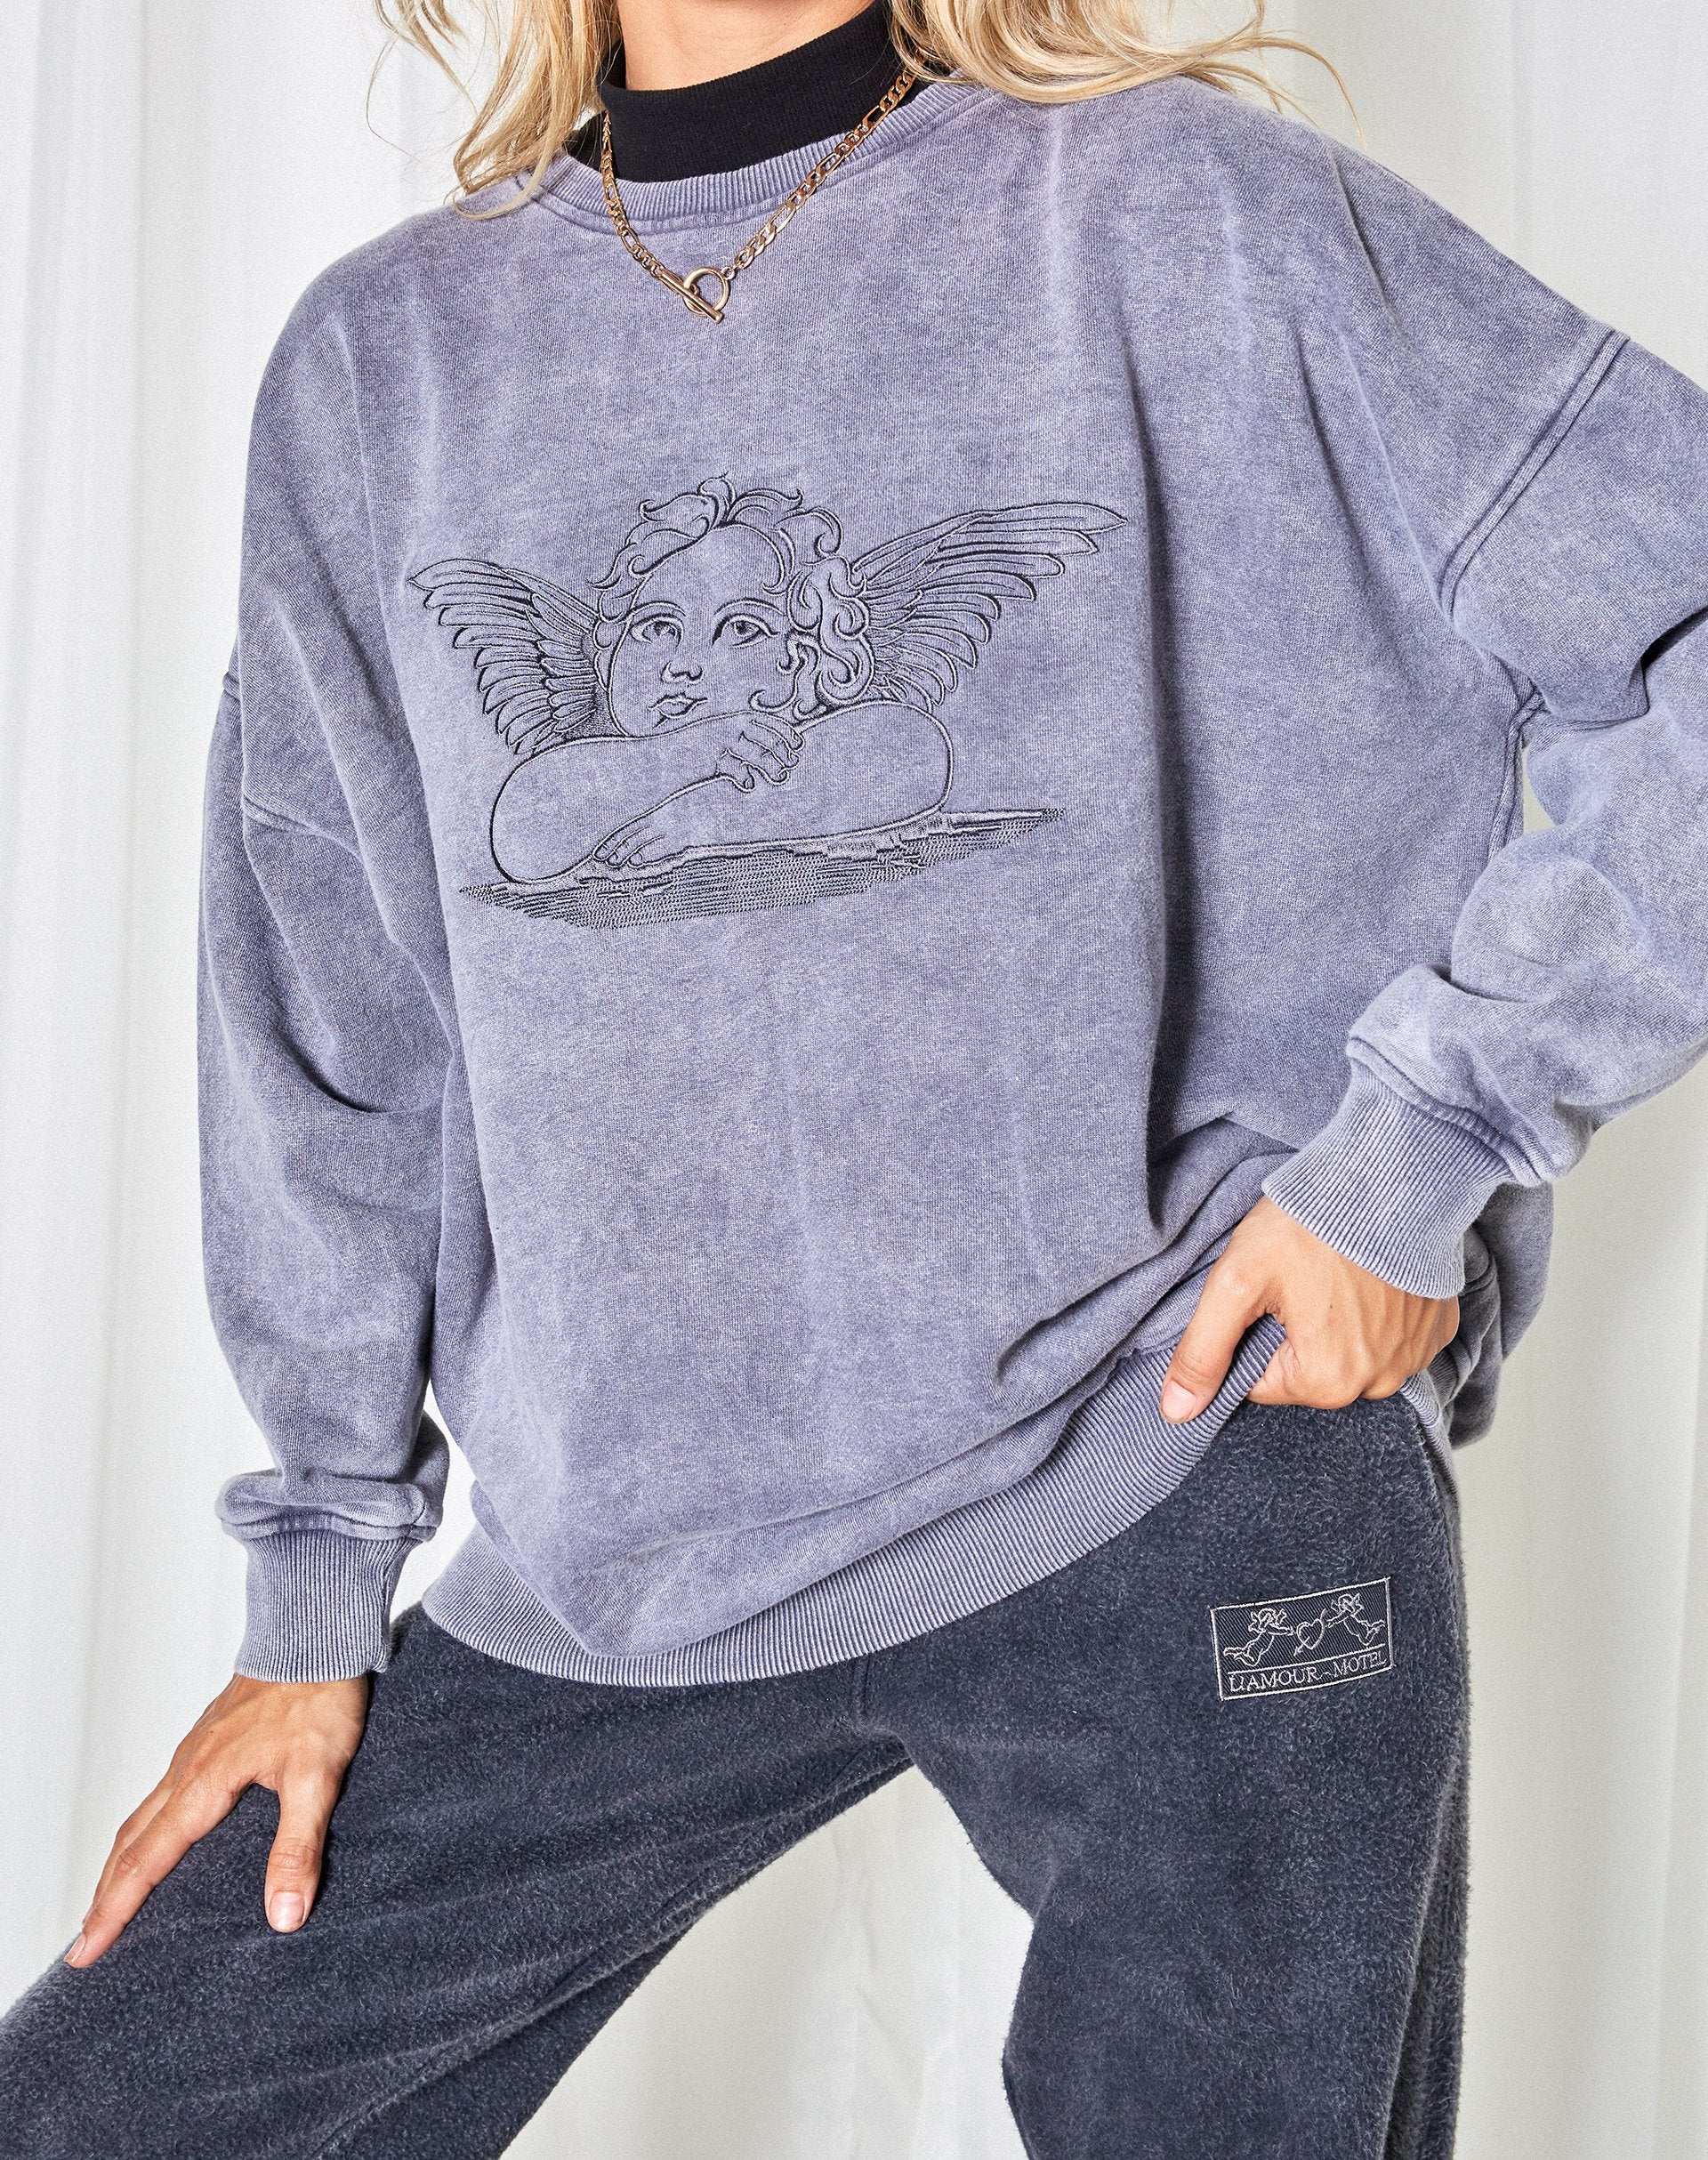 Glo Sweatshirt in Charcoal Wash Angelo Embro